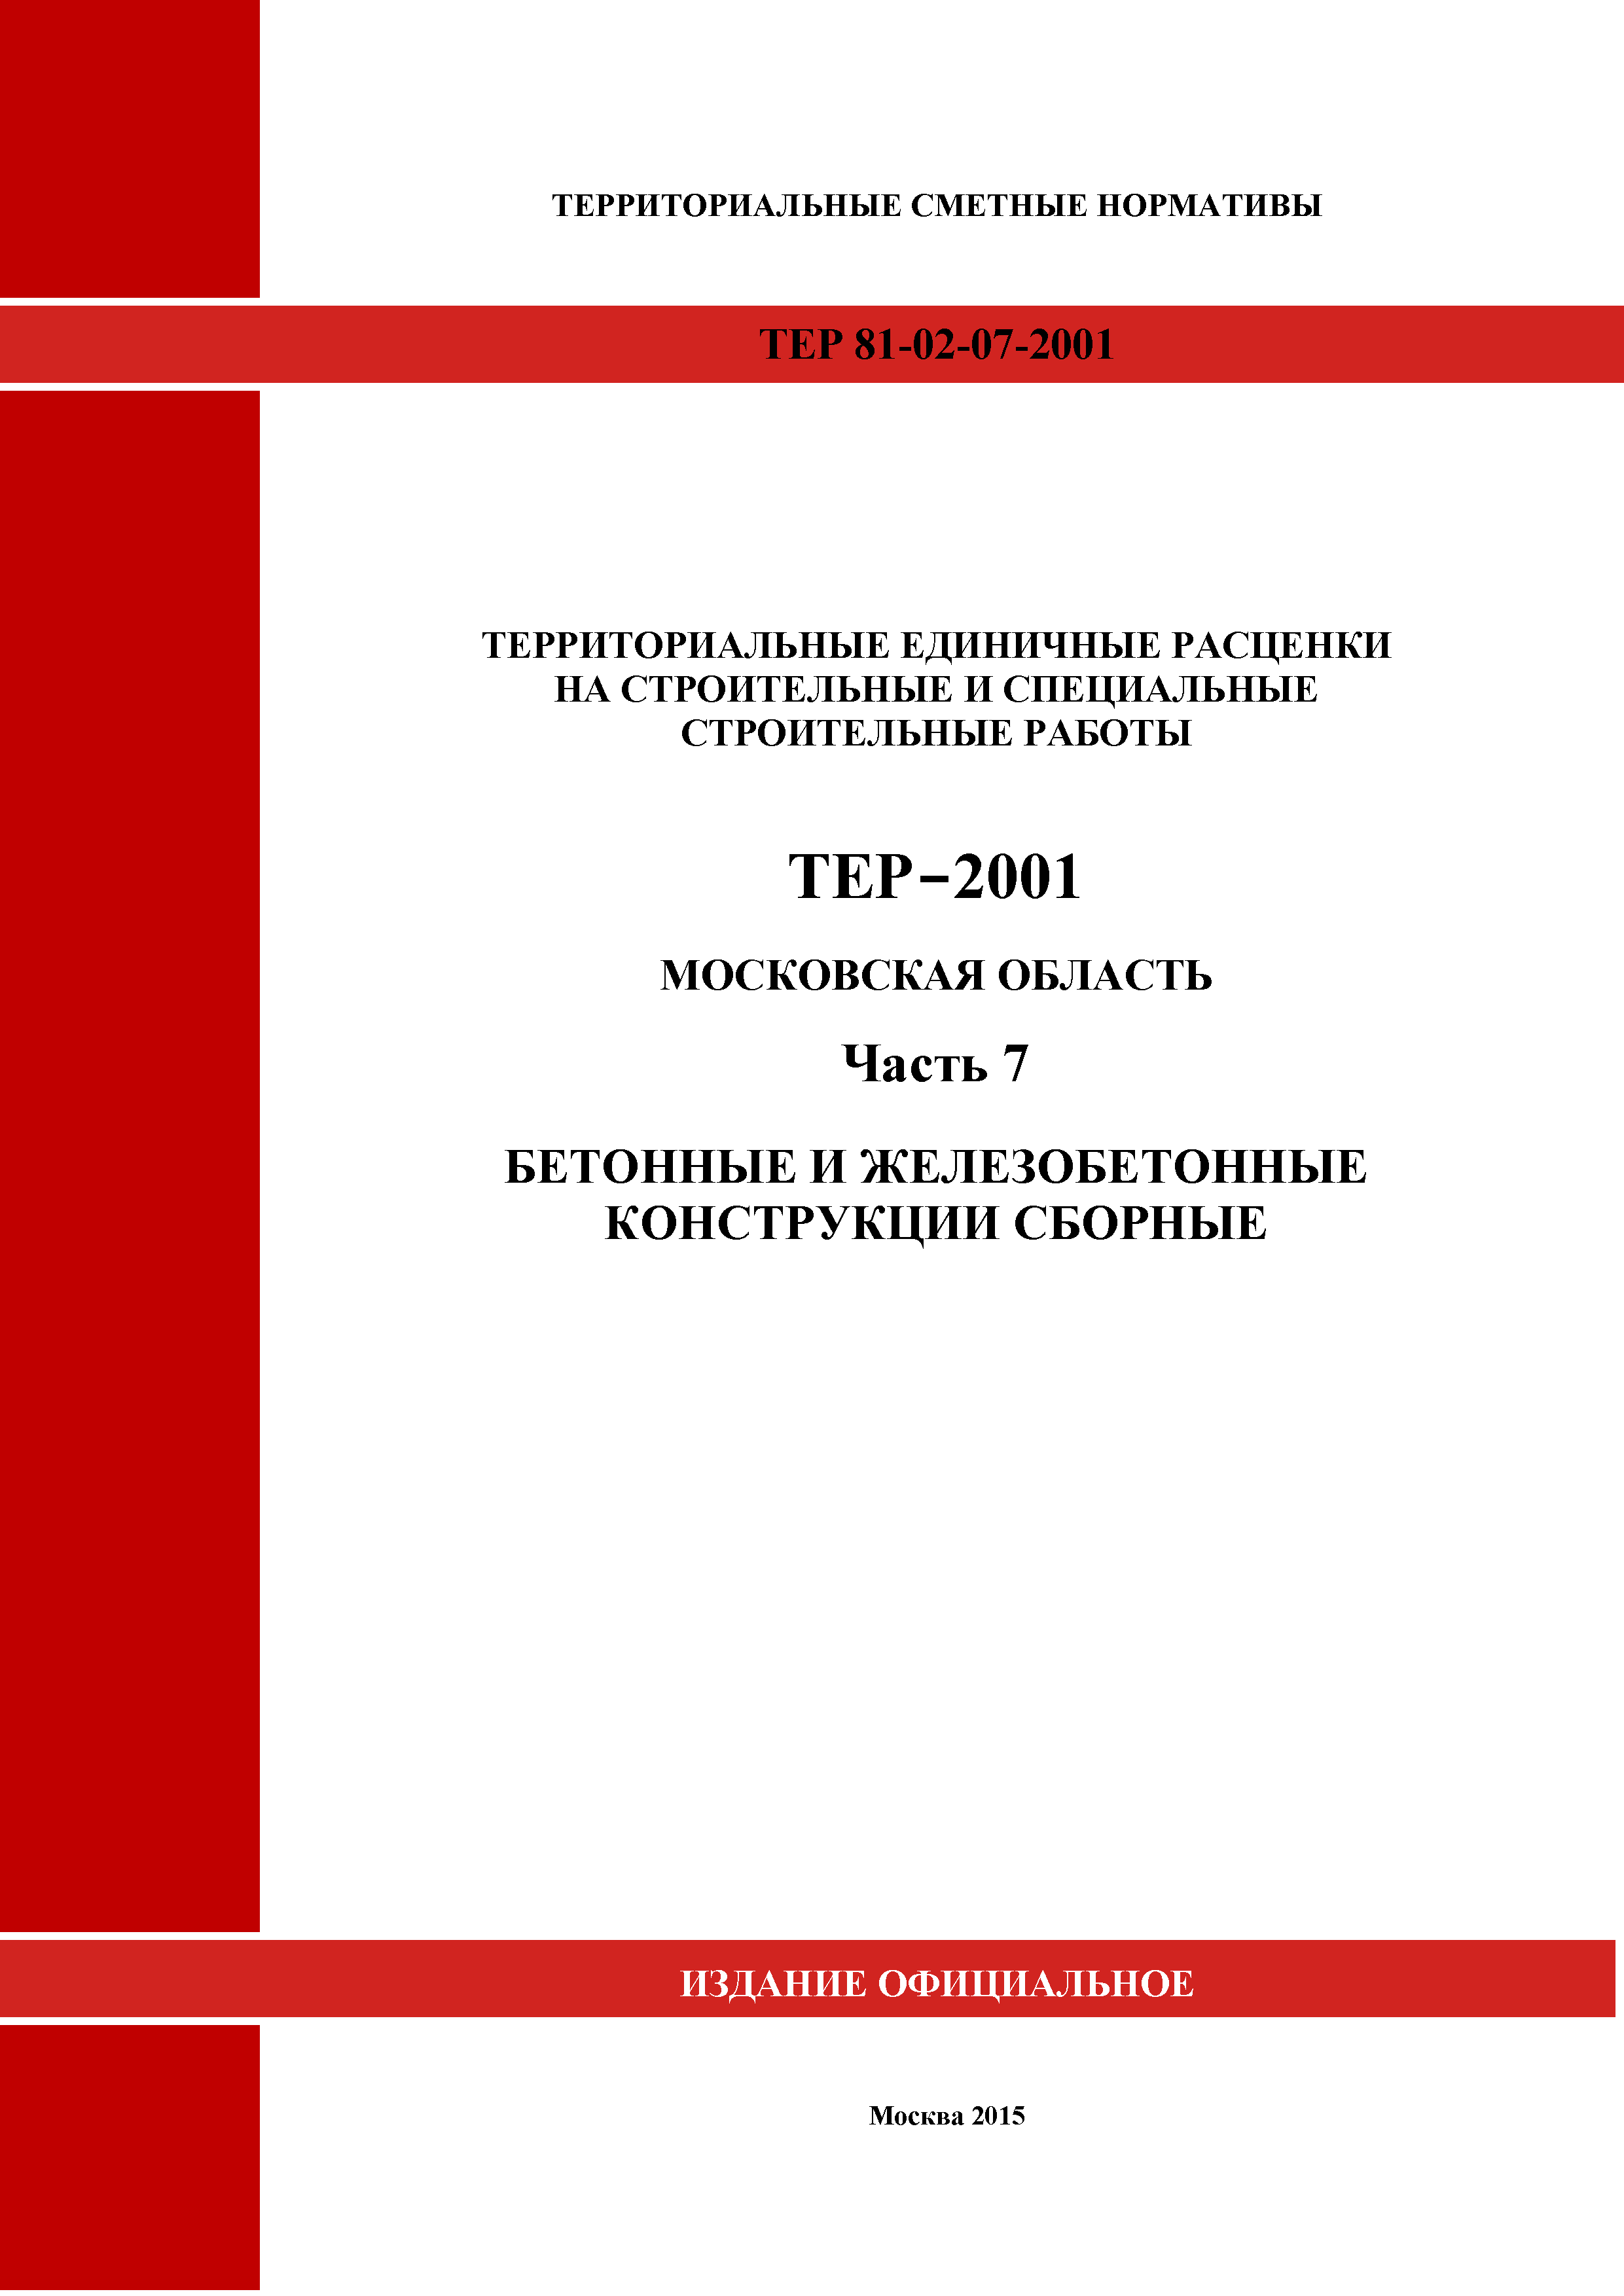 ТЕР 7-2001 Московской области